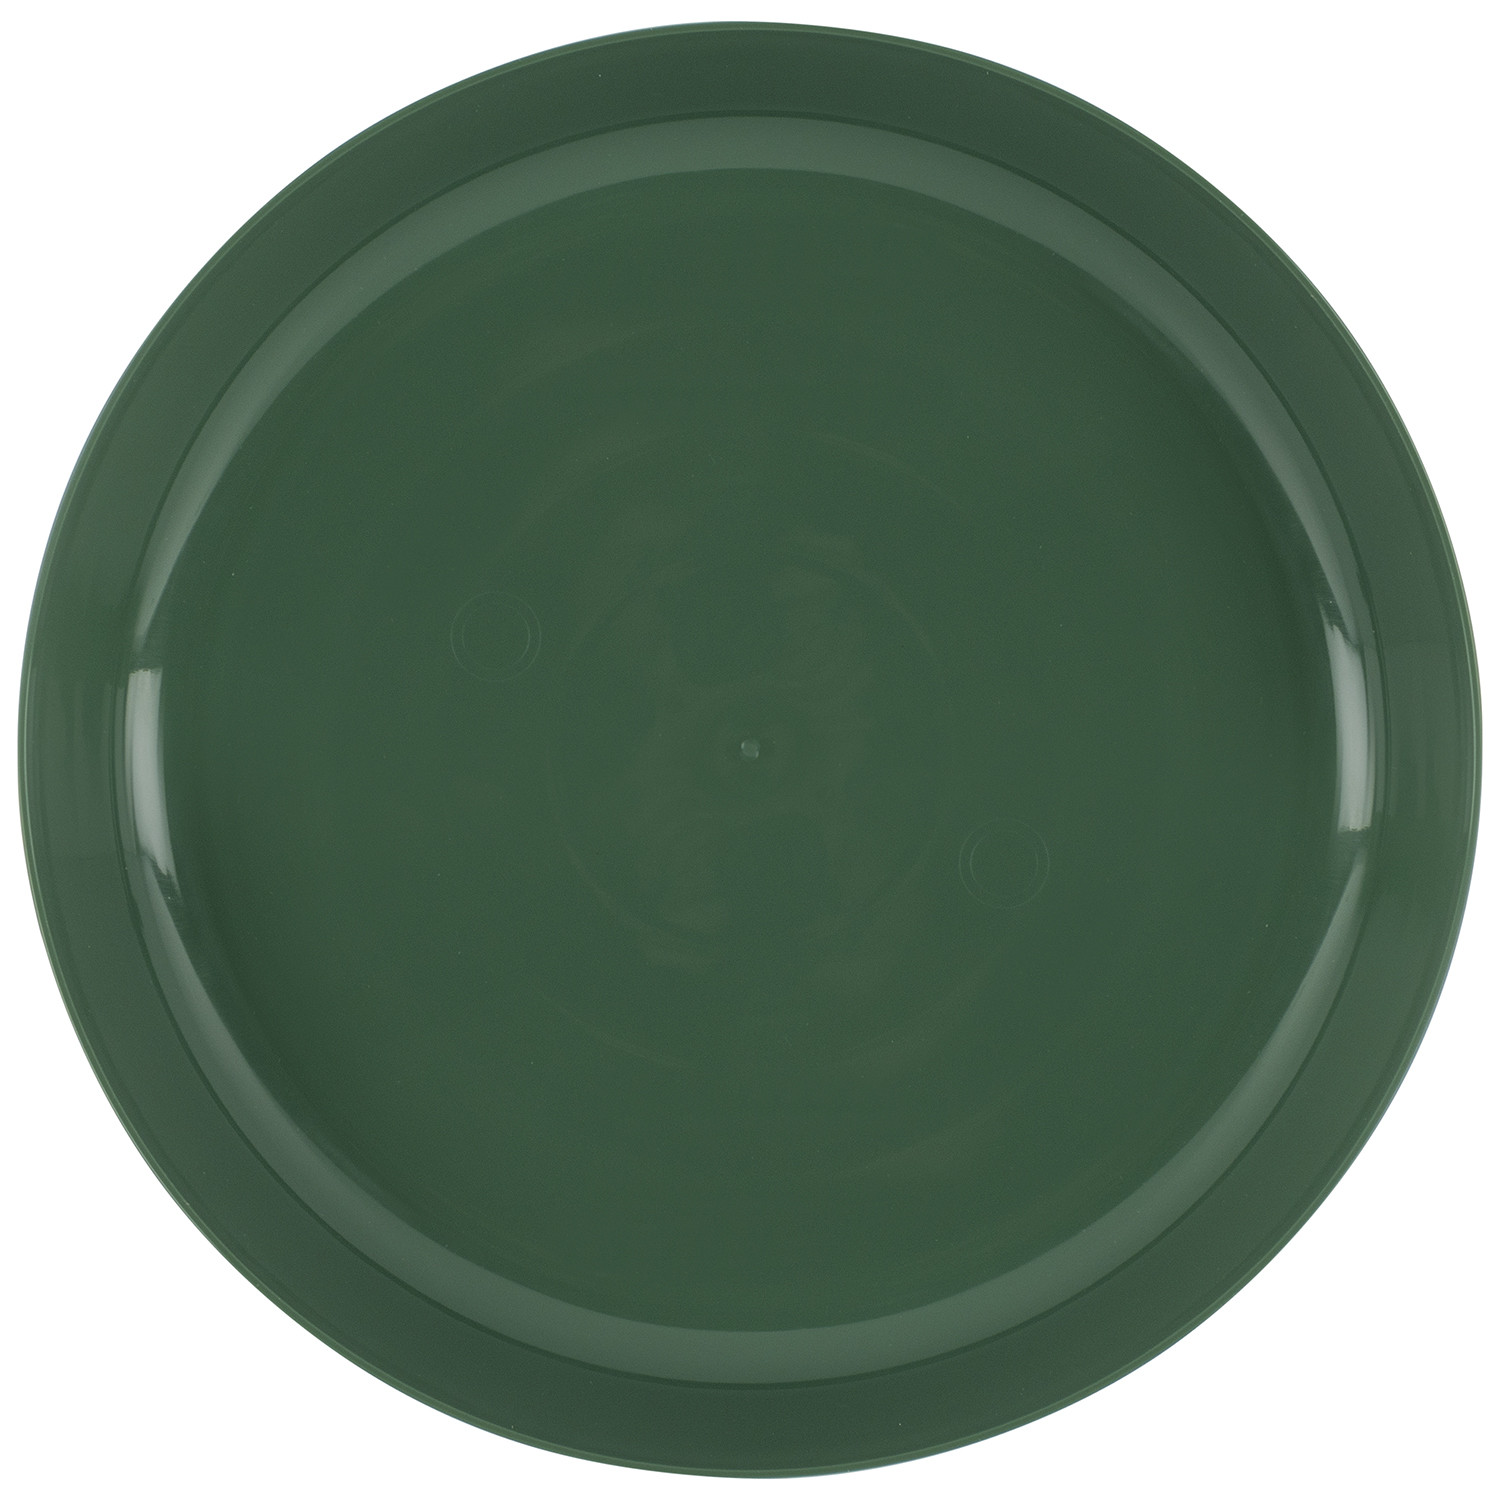 Plastic Plate Image 1